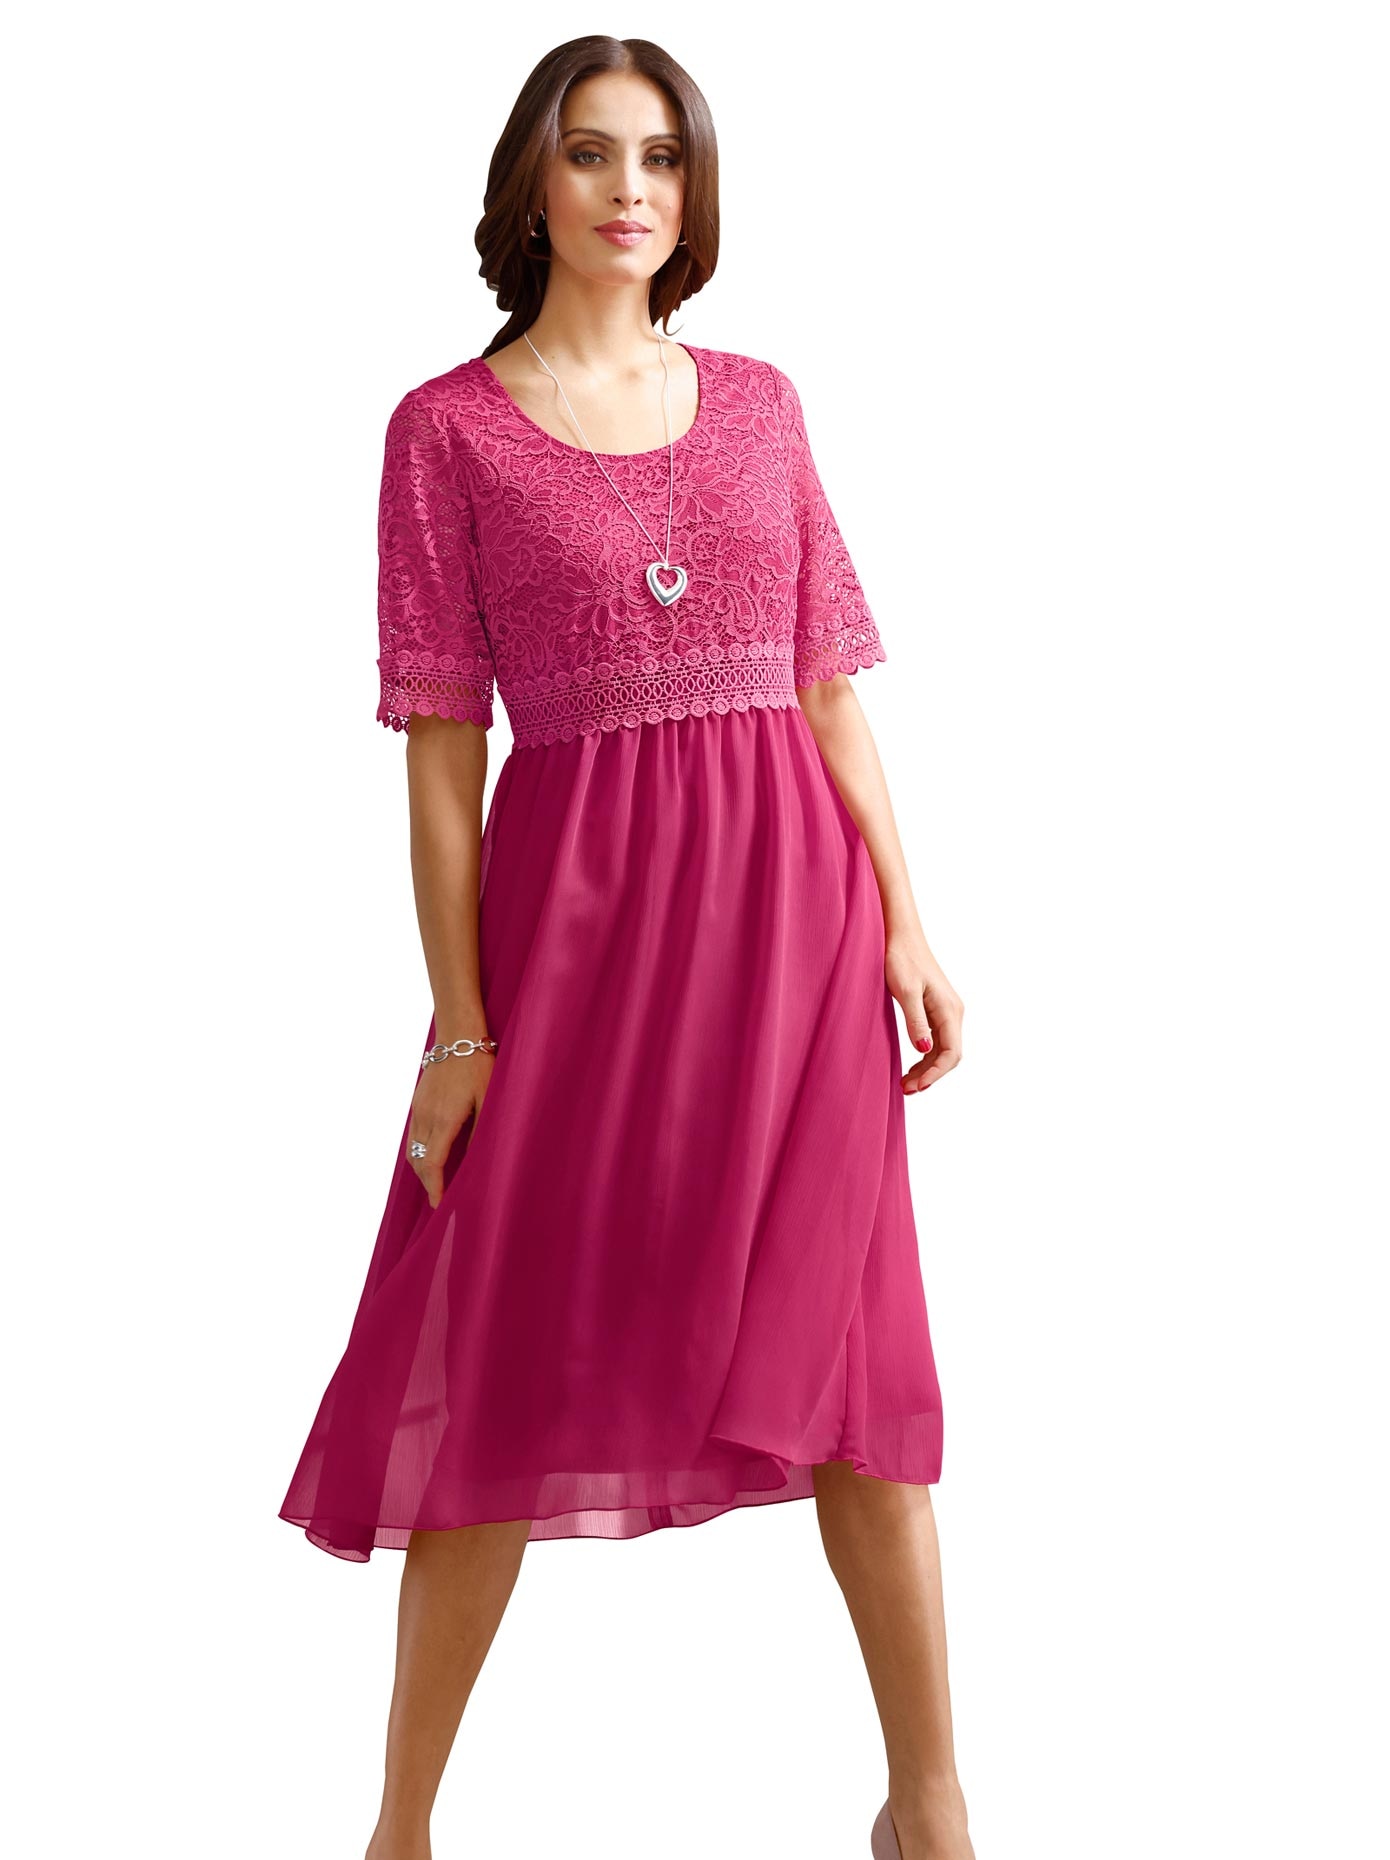 Pinkes Kleid online jetzt OTTO bei Pinkfarbene Kleider kaufen 